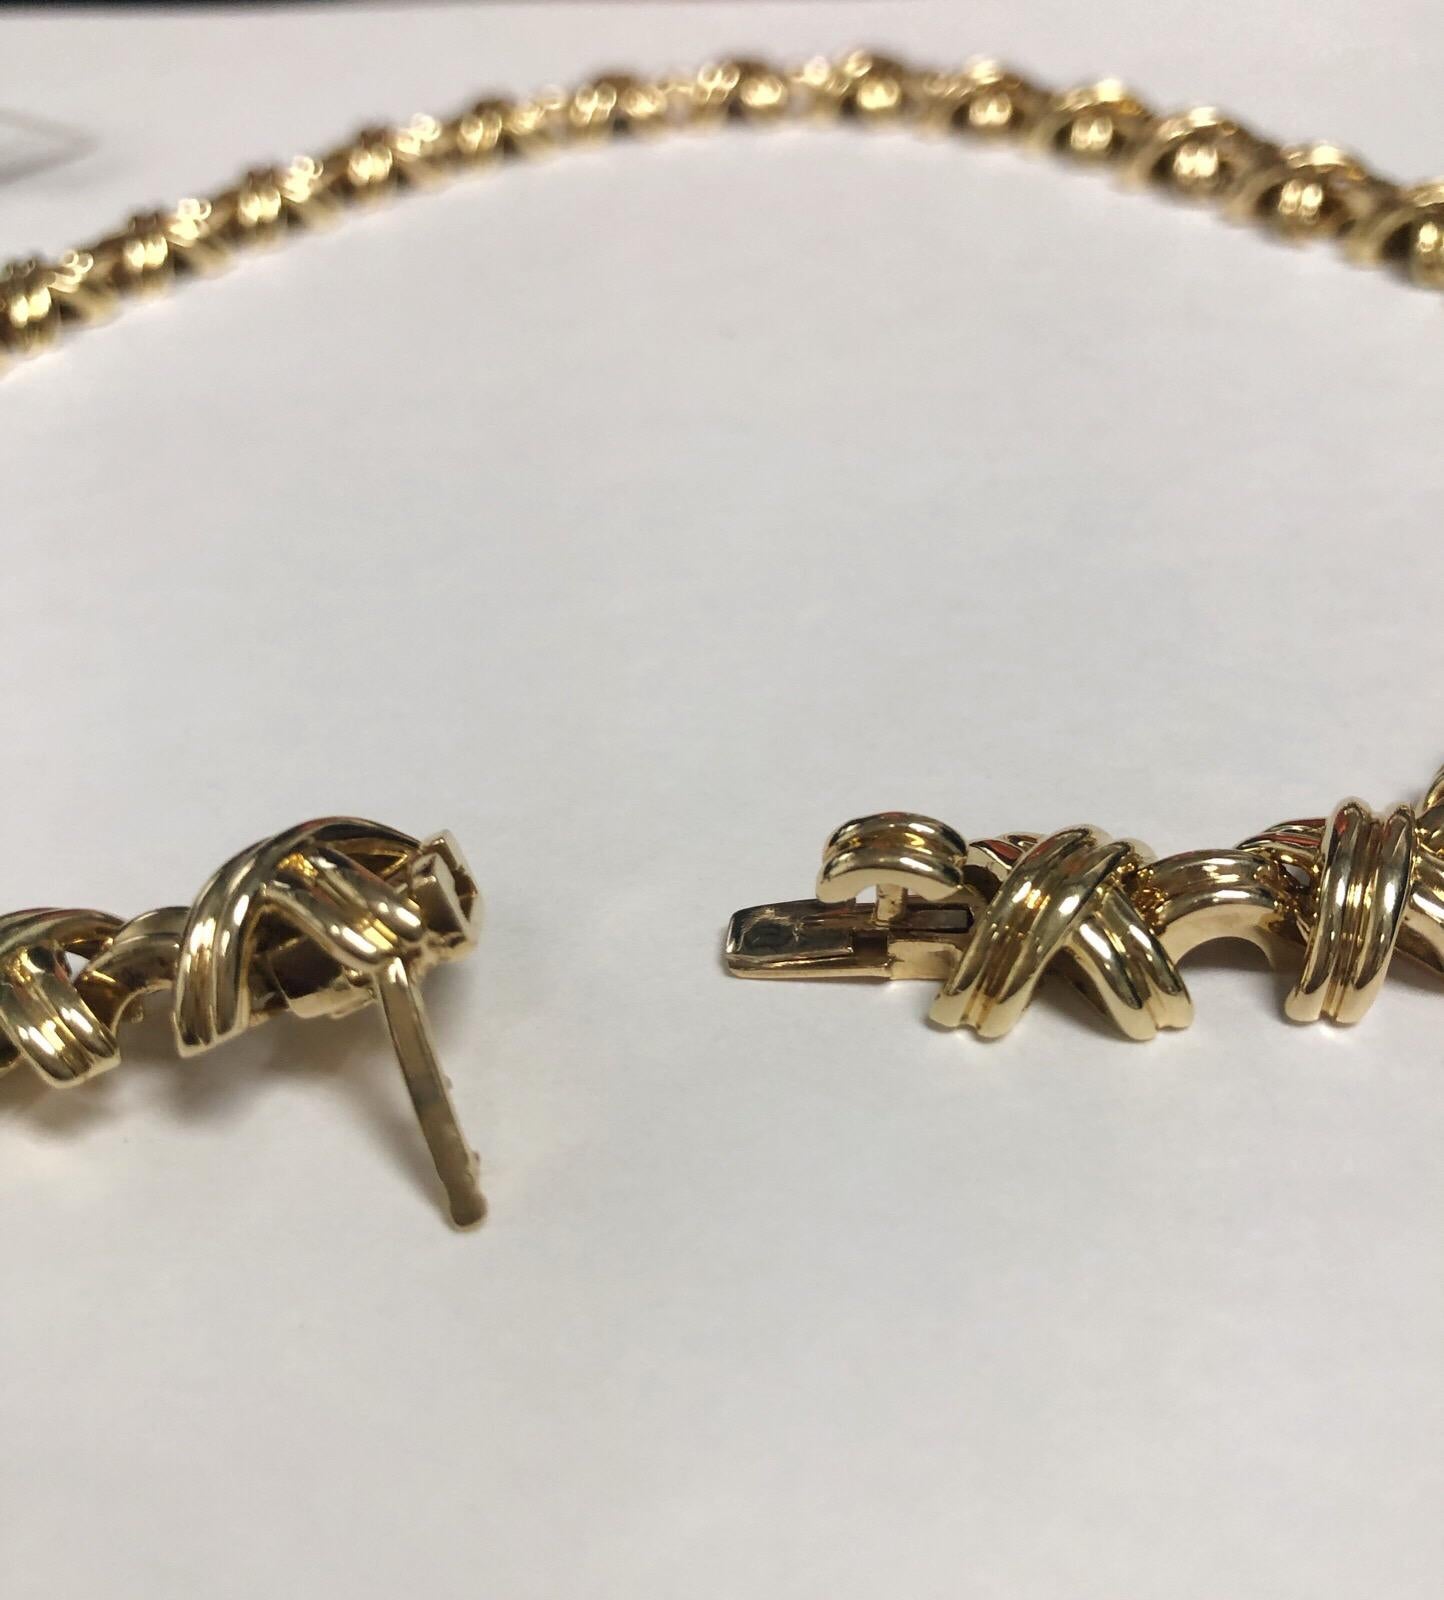 Tiffany & Co. Unterschrift X  Design-Halskette aus 18 Karat Gelbgold. Passende Ringe, Ohrringe und Armbänder sind vorhanden, werden aber separat verkauft. 